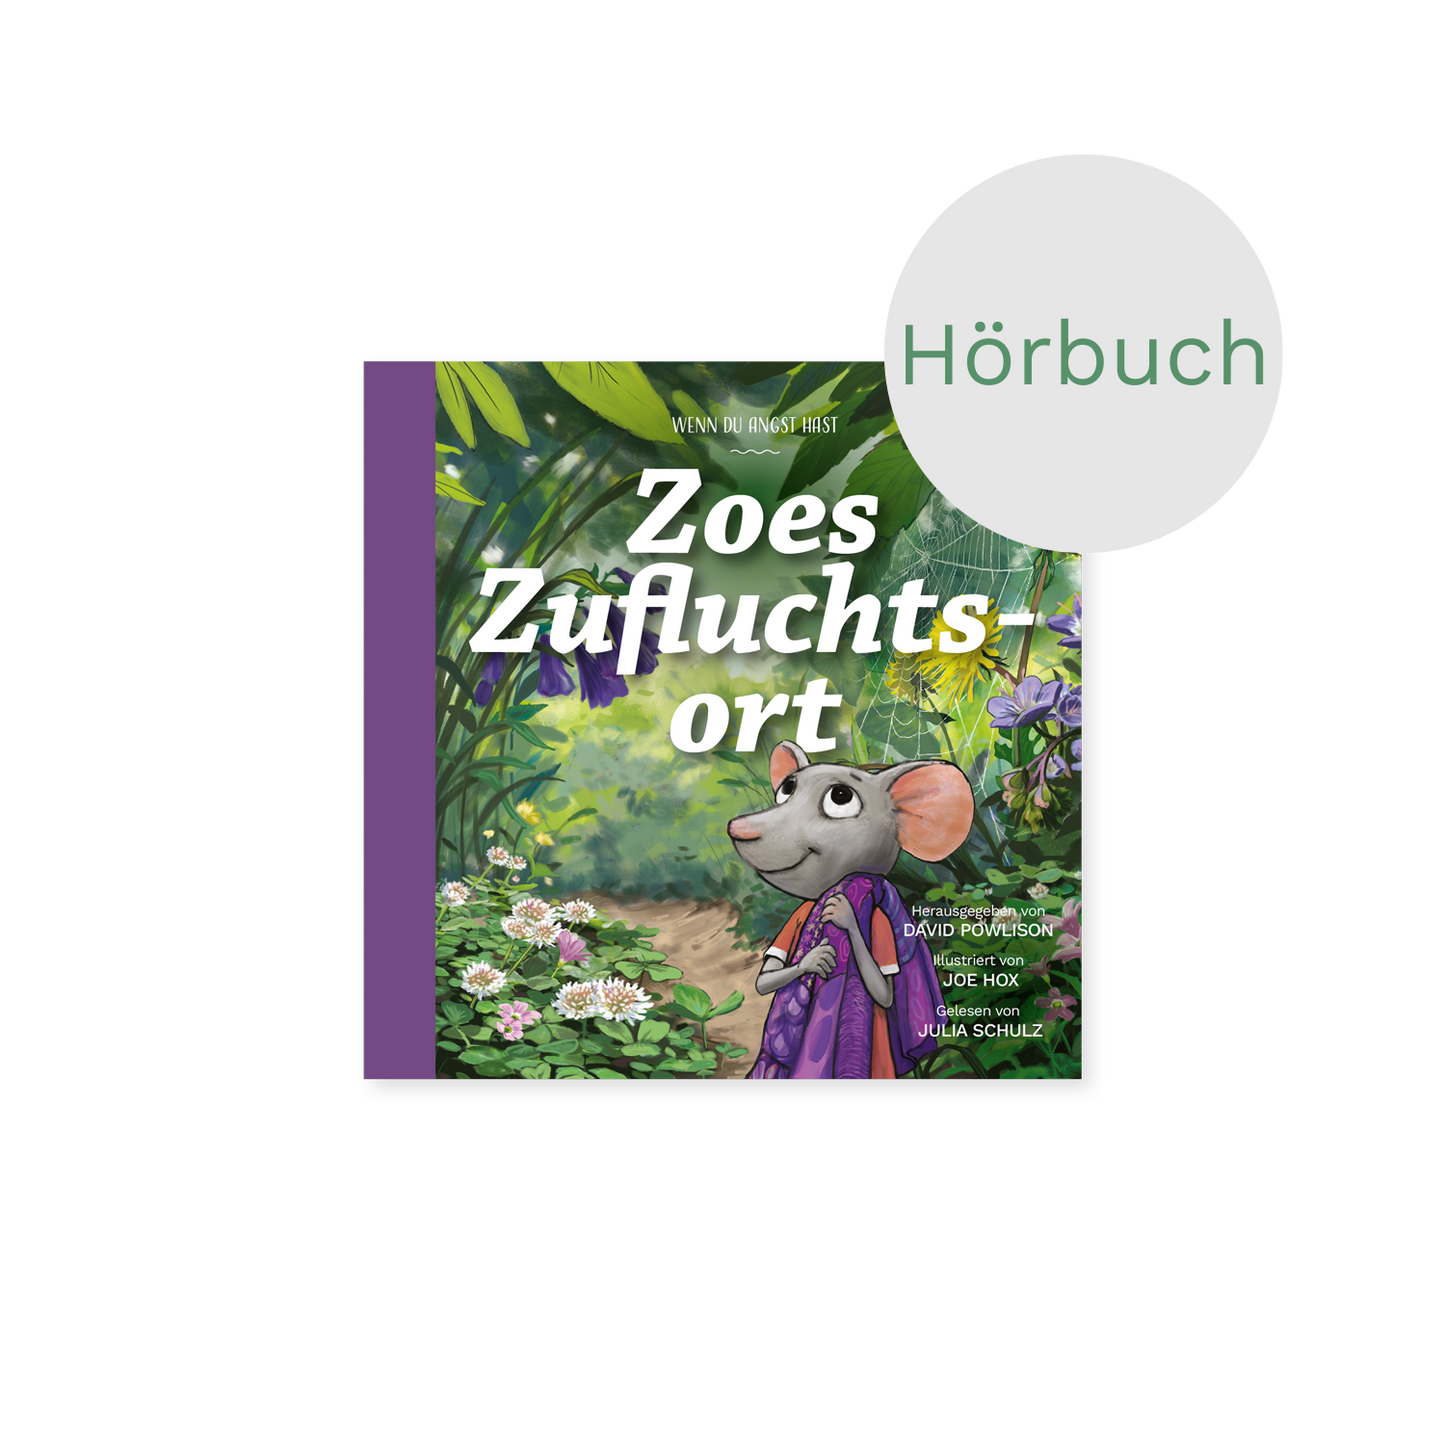 Hörbuch – Zoes Zufluchtsort: Wenn du Angst hast